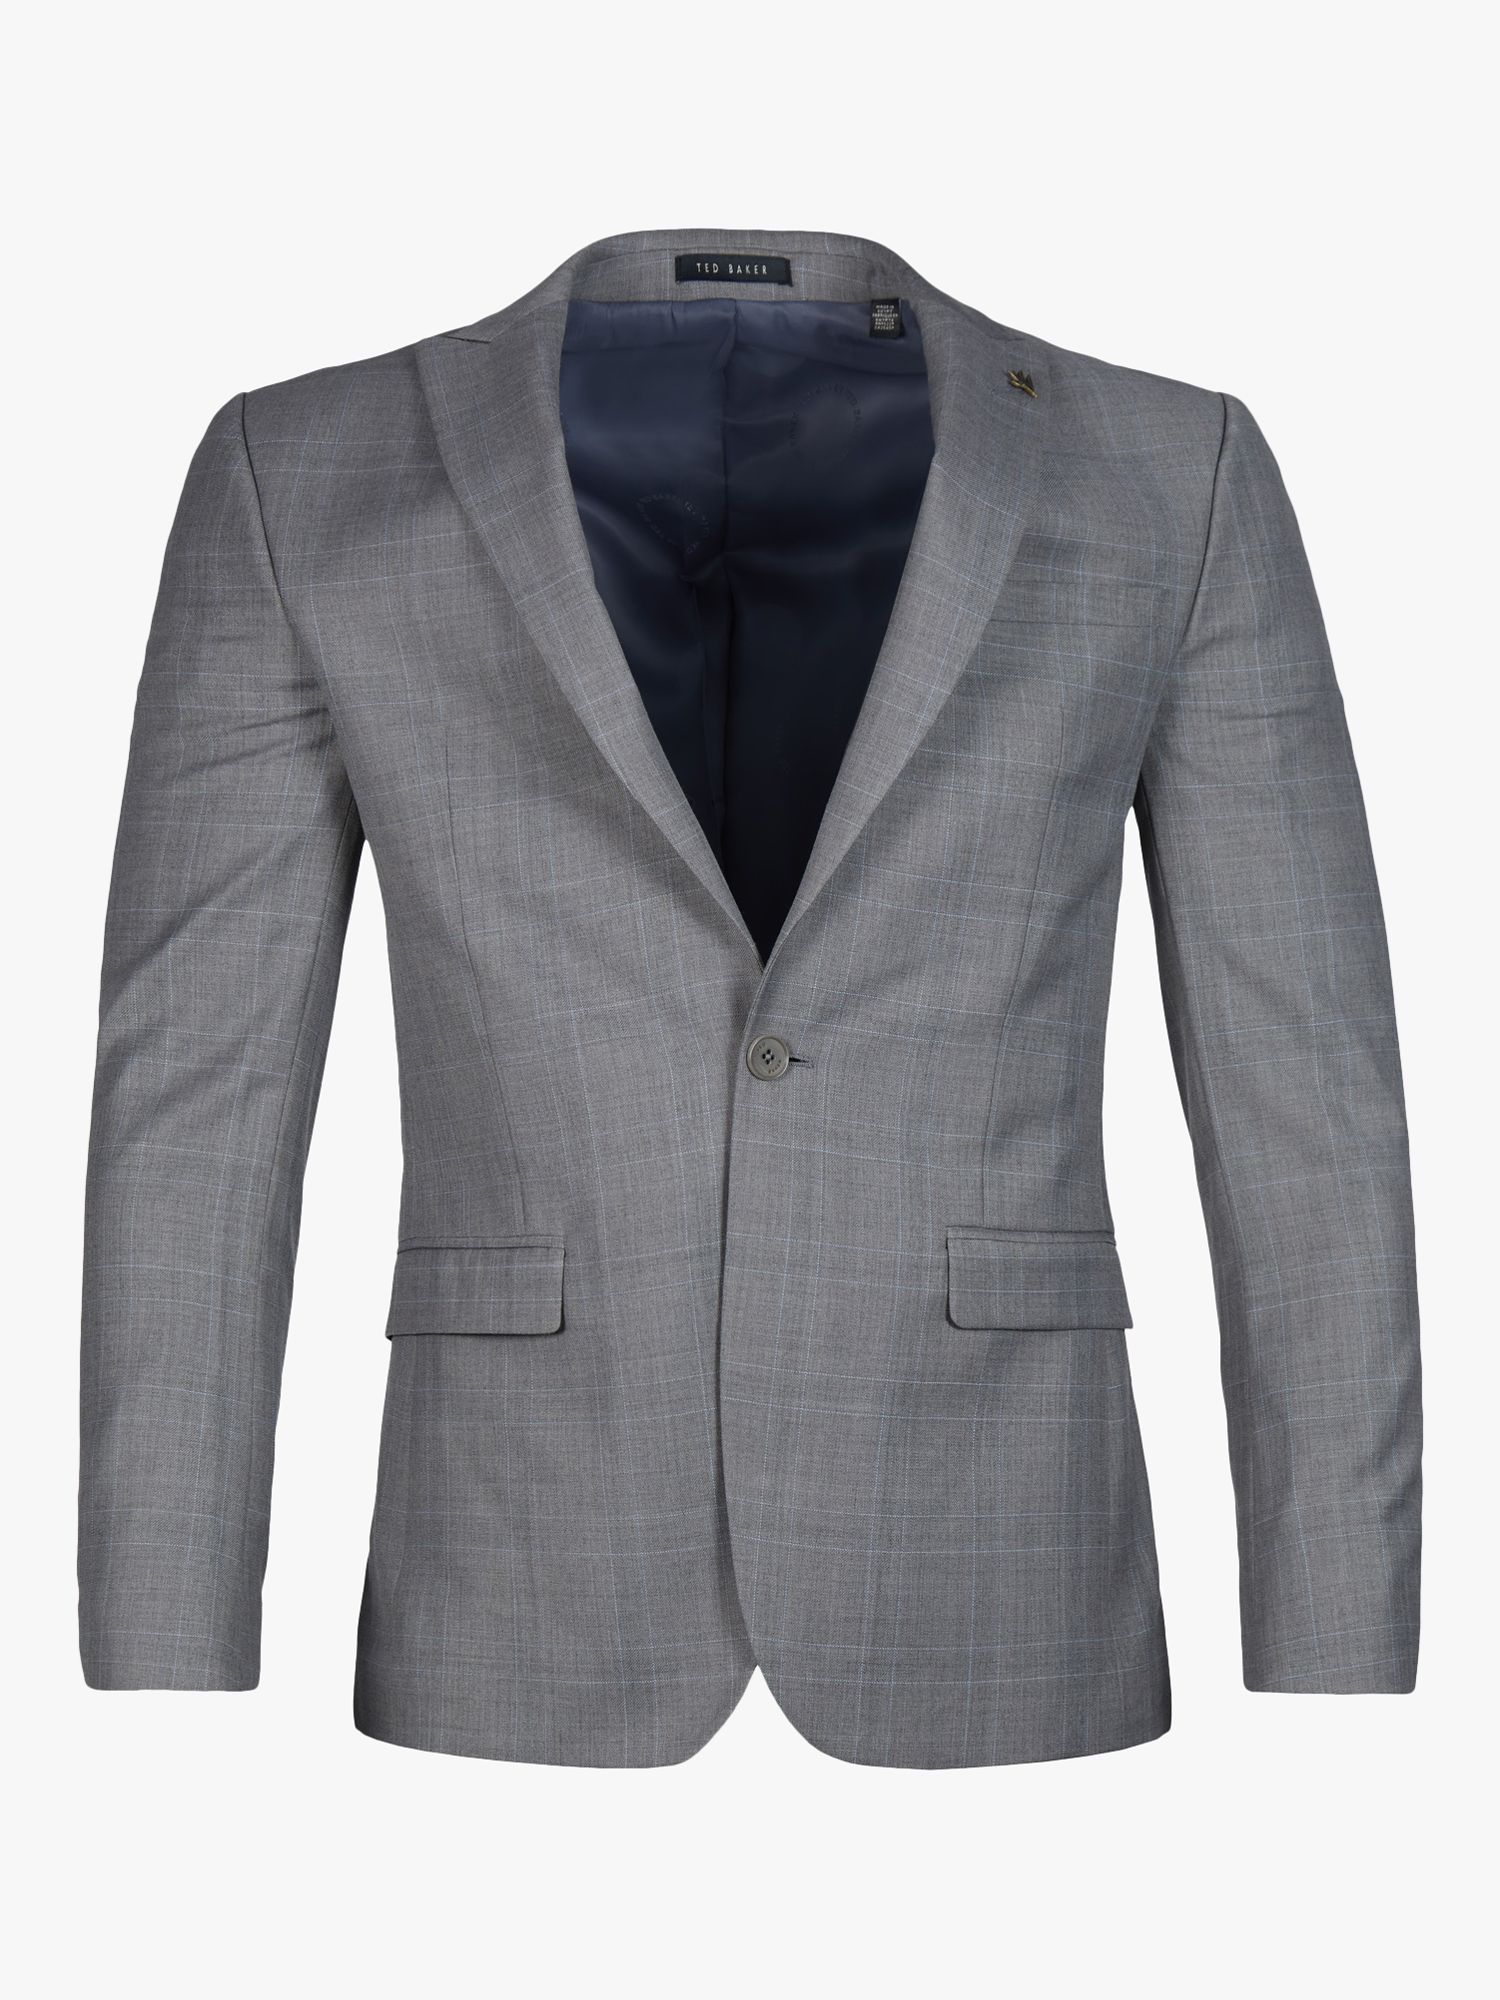 Buy Ted Baker Soft Check Wool Blend Slim Fit Jacket, Grey Online at johnlewis.com